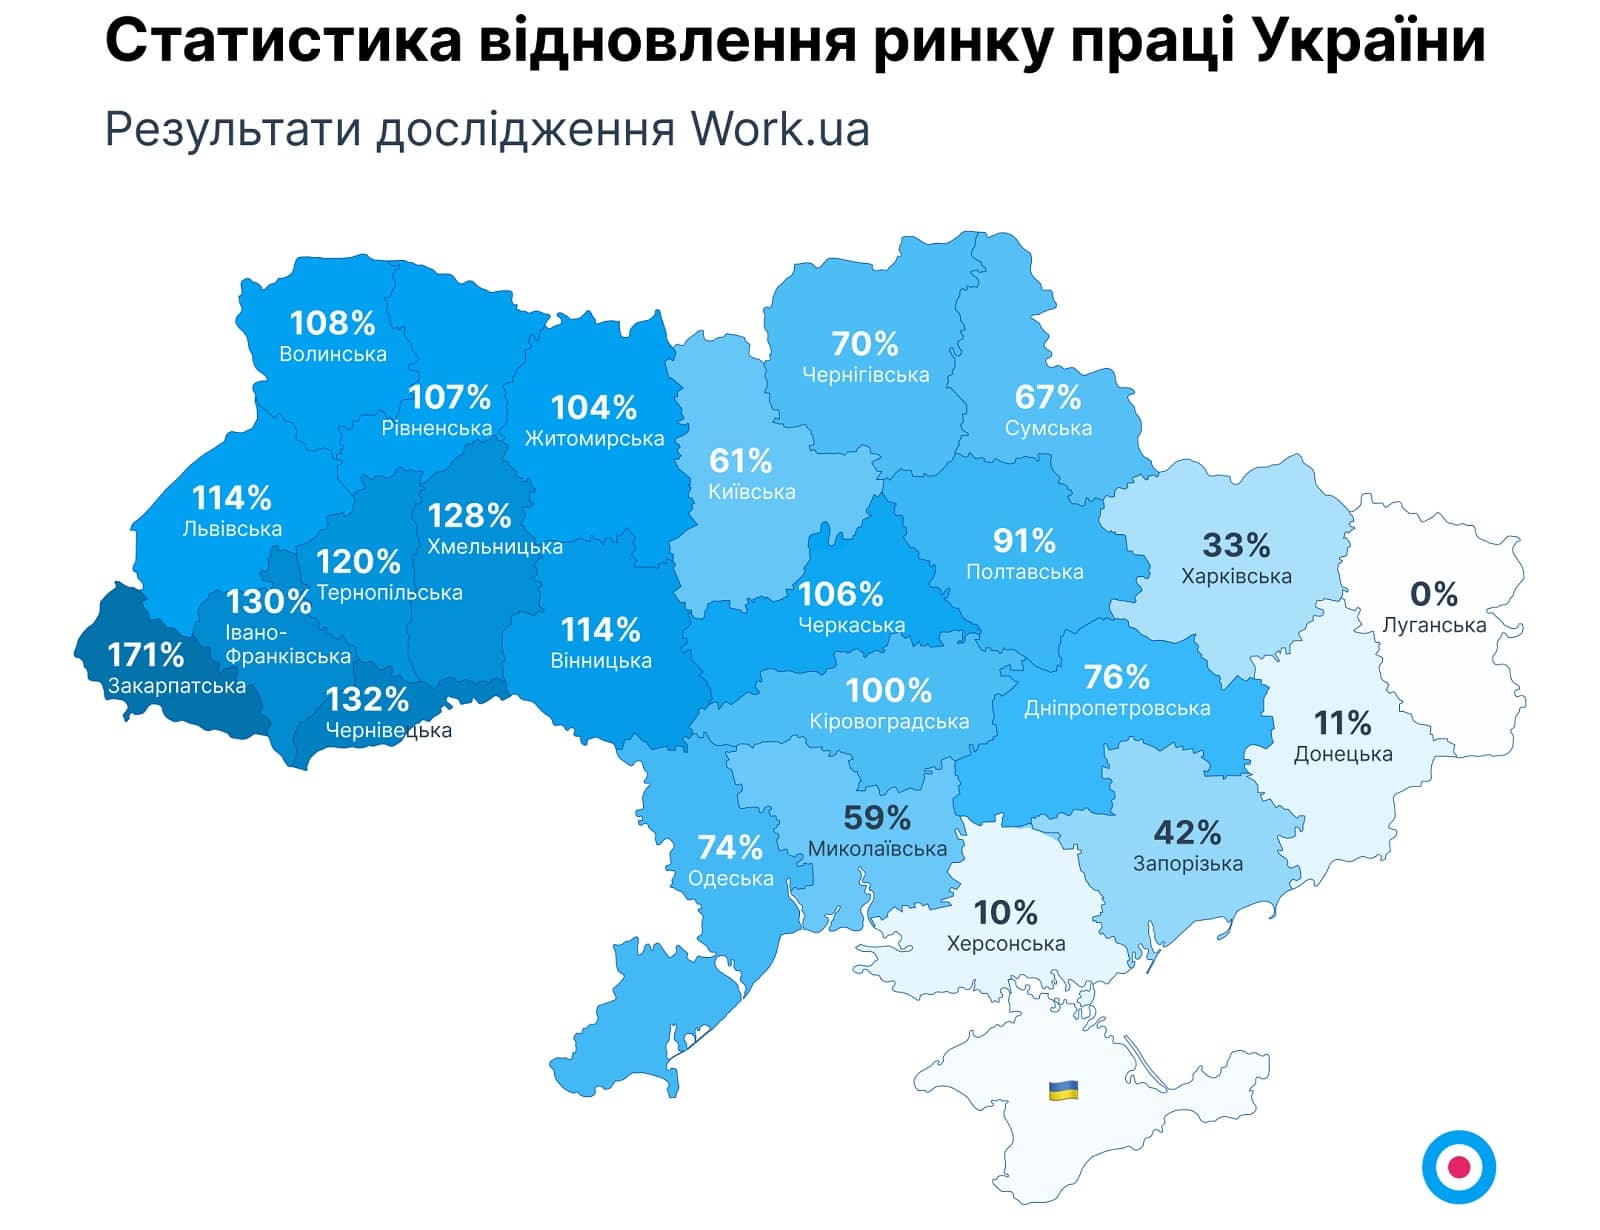 Графік 1. Статистика відновлення ринку праці України (у квітні)